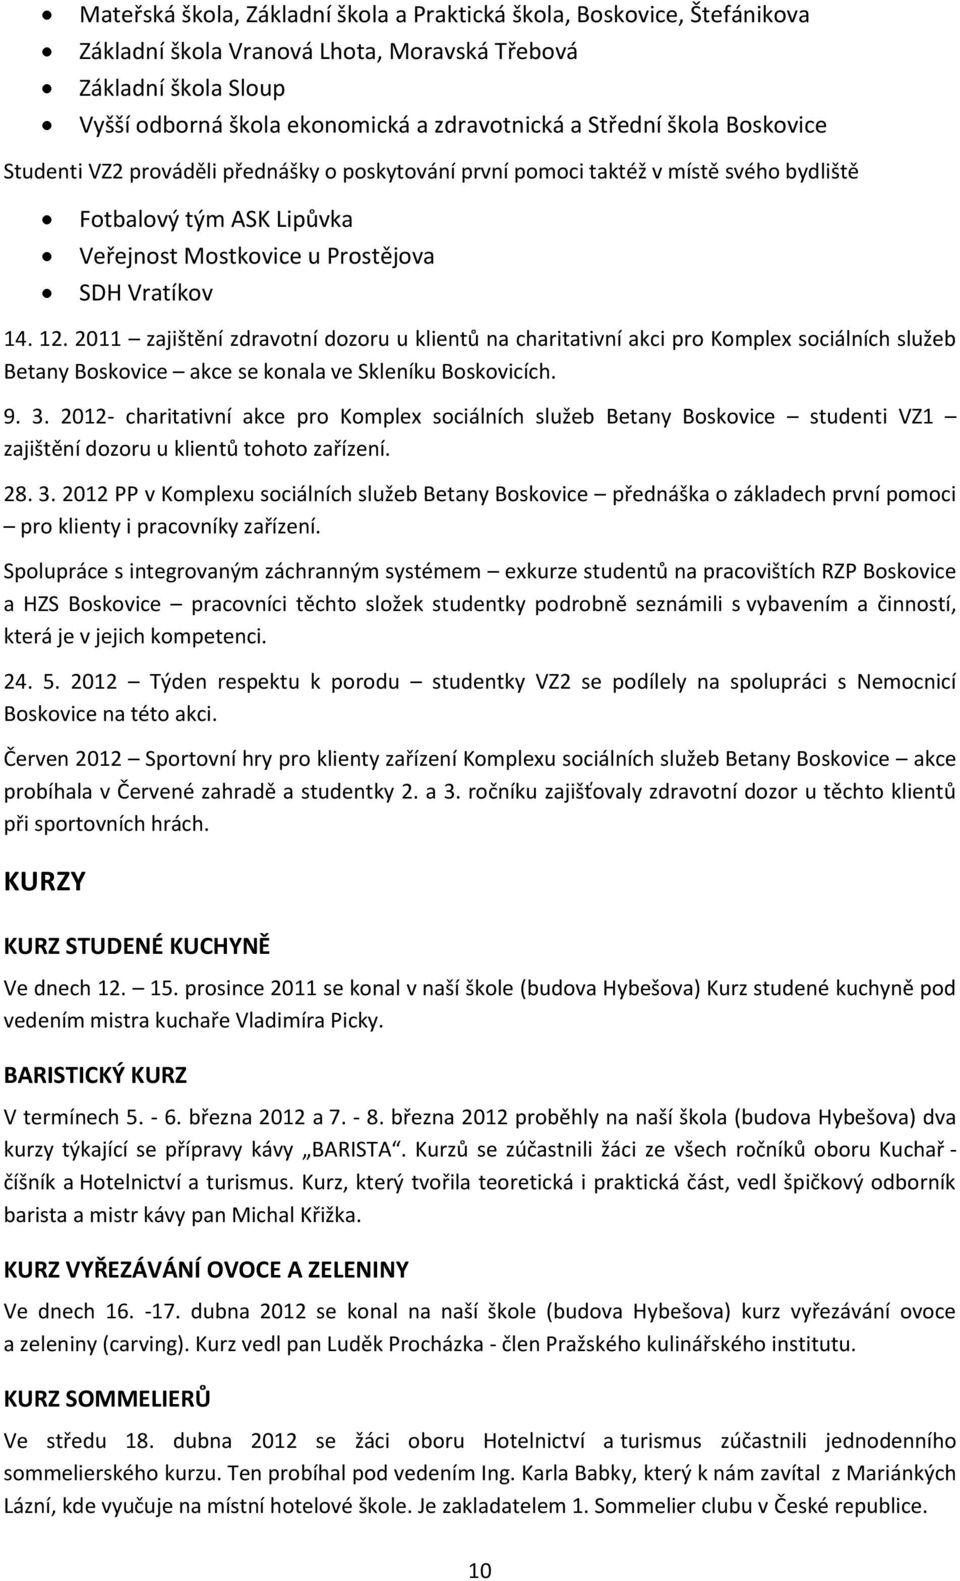 2011 zajištění zdravotní dozoru u klientů na charitativní akci pro Komplex sociálních služeb Betany Boskovice akce se konala ve Skleníku Boskovicích. 9. 3.